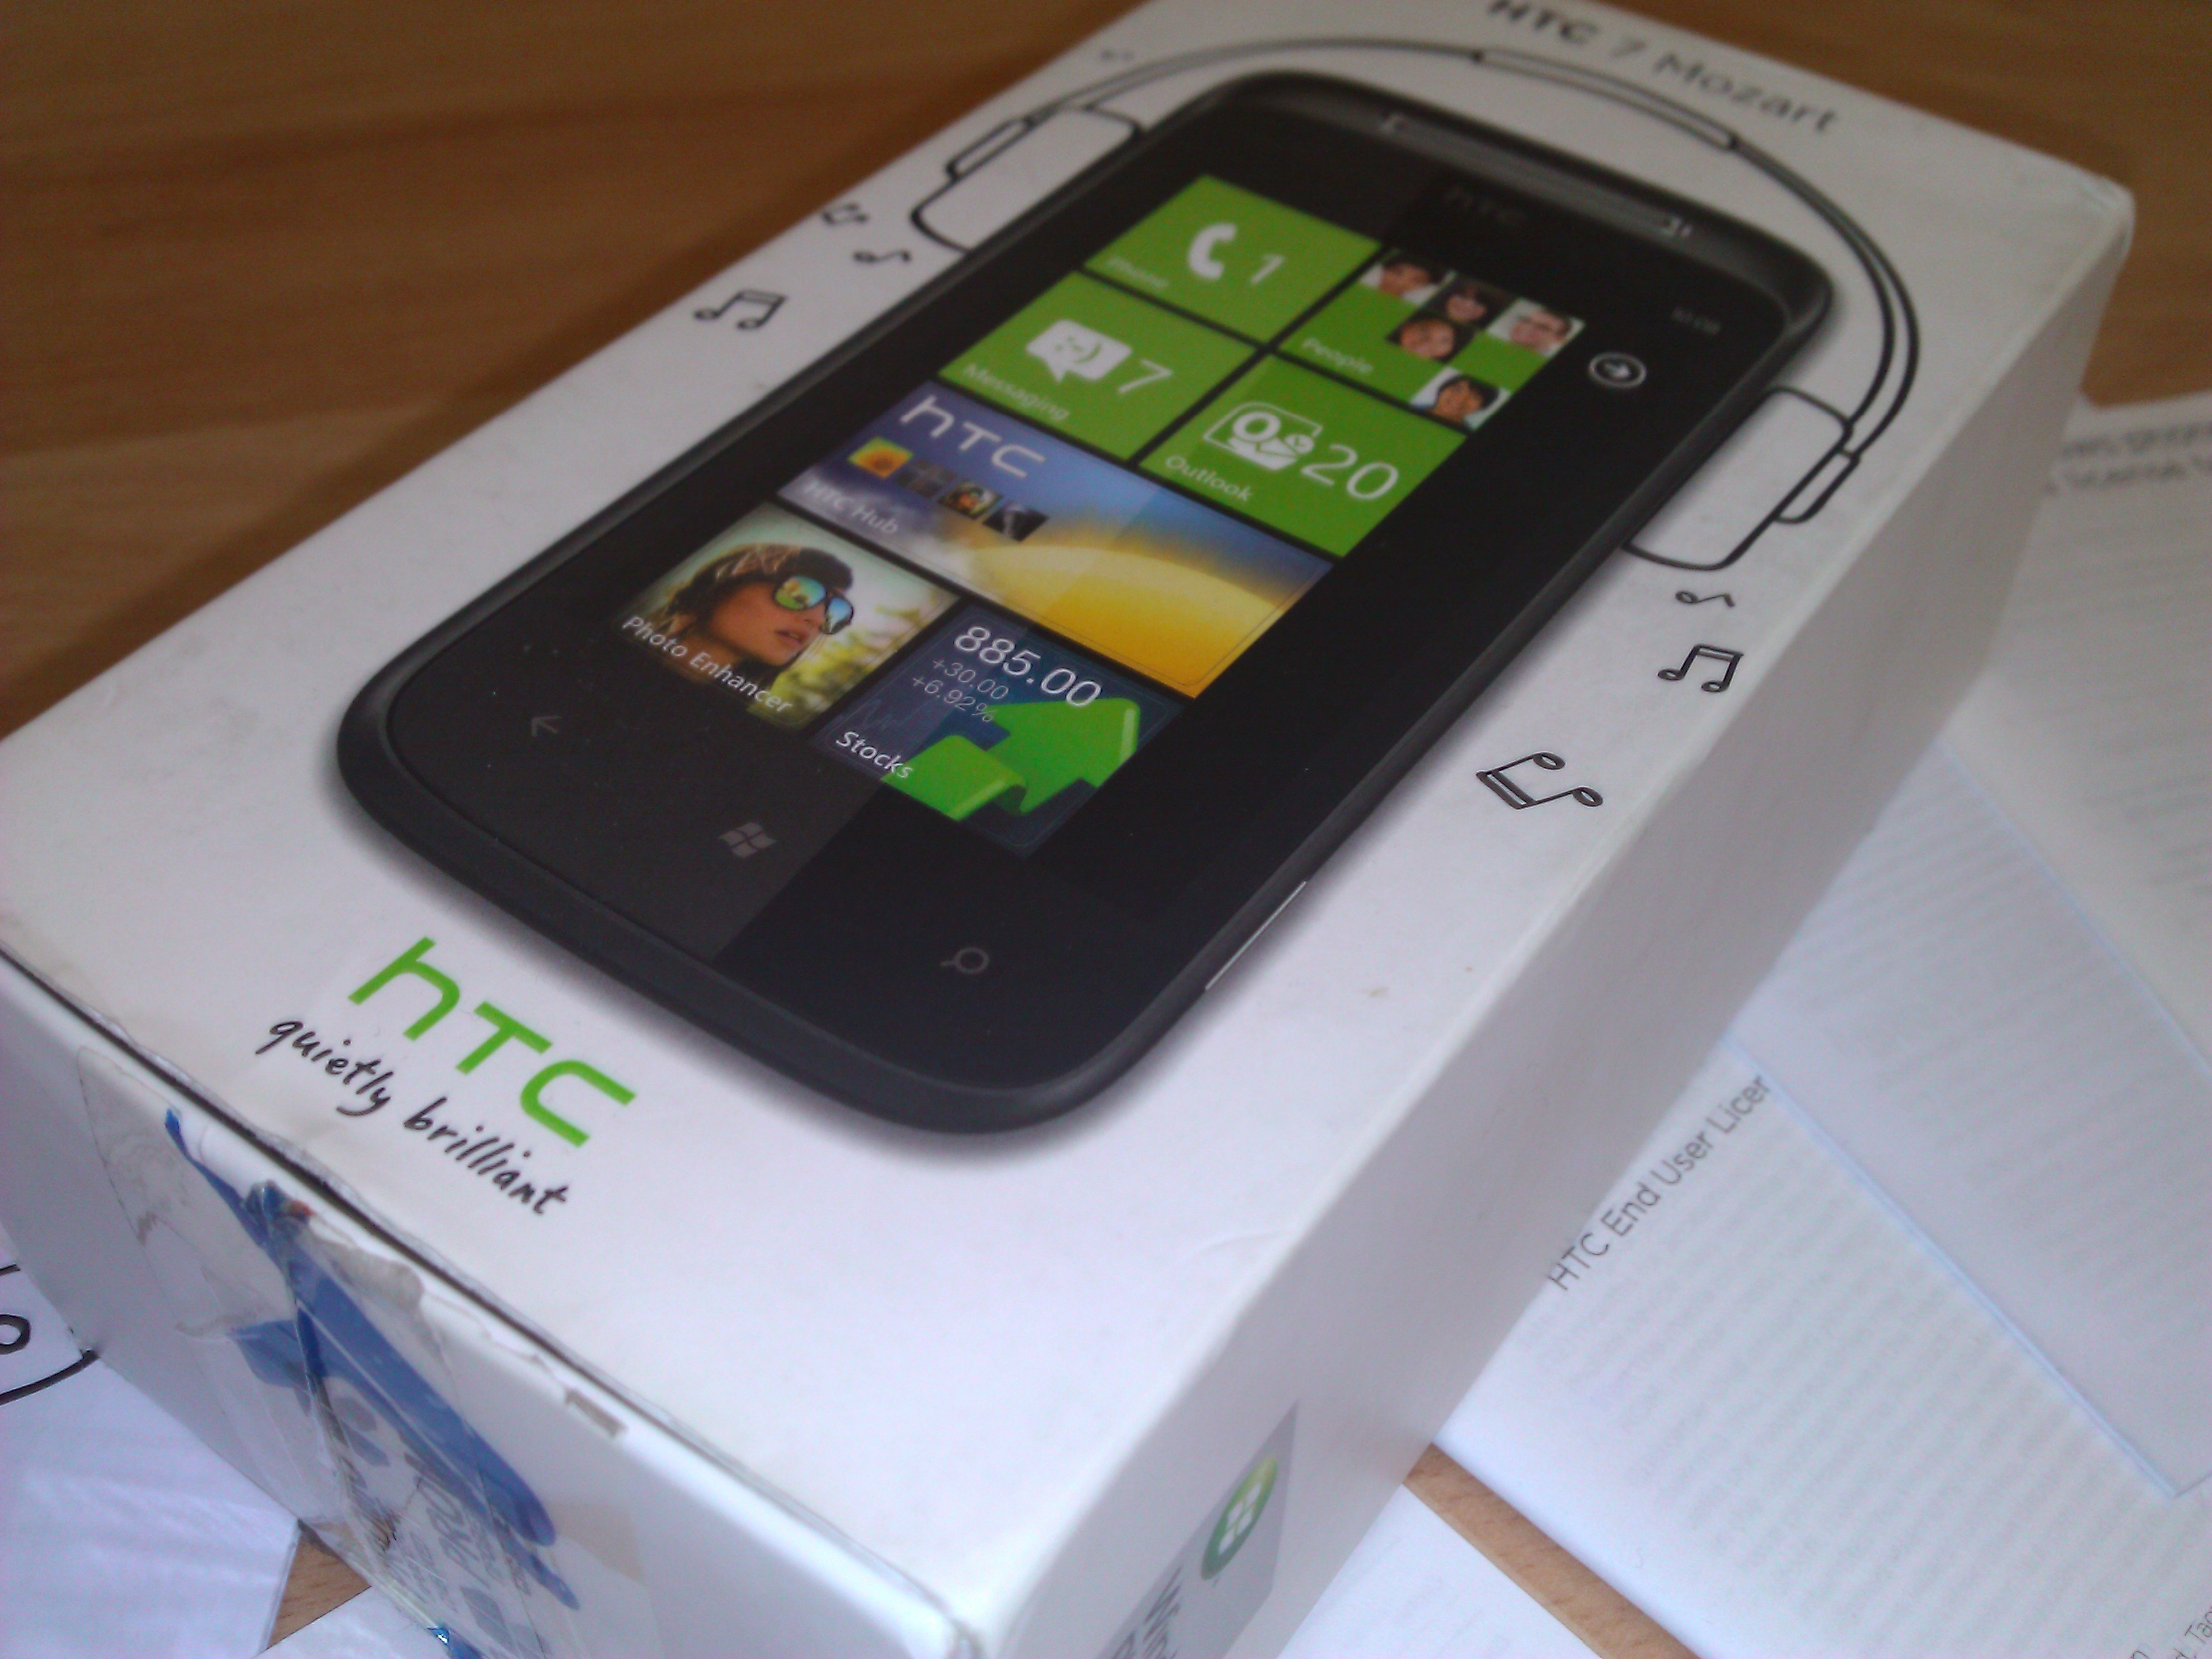  HTC Mozart 7 KUTULU TAKAS OLUR